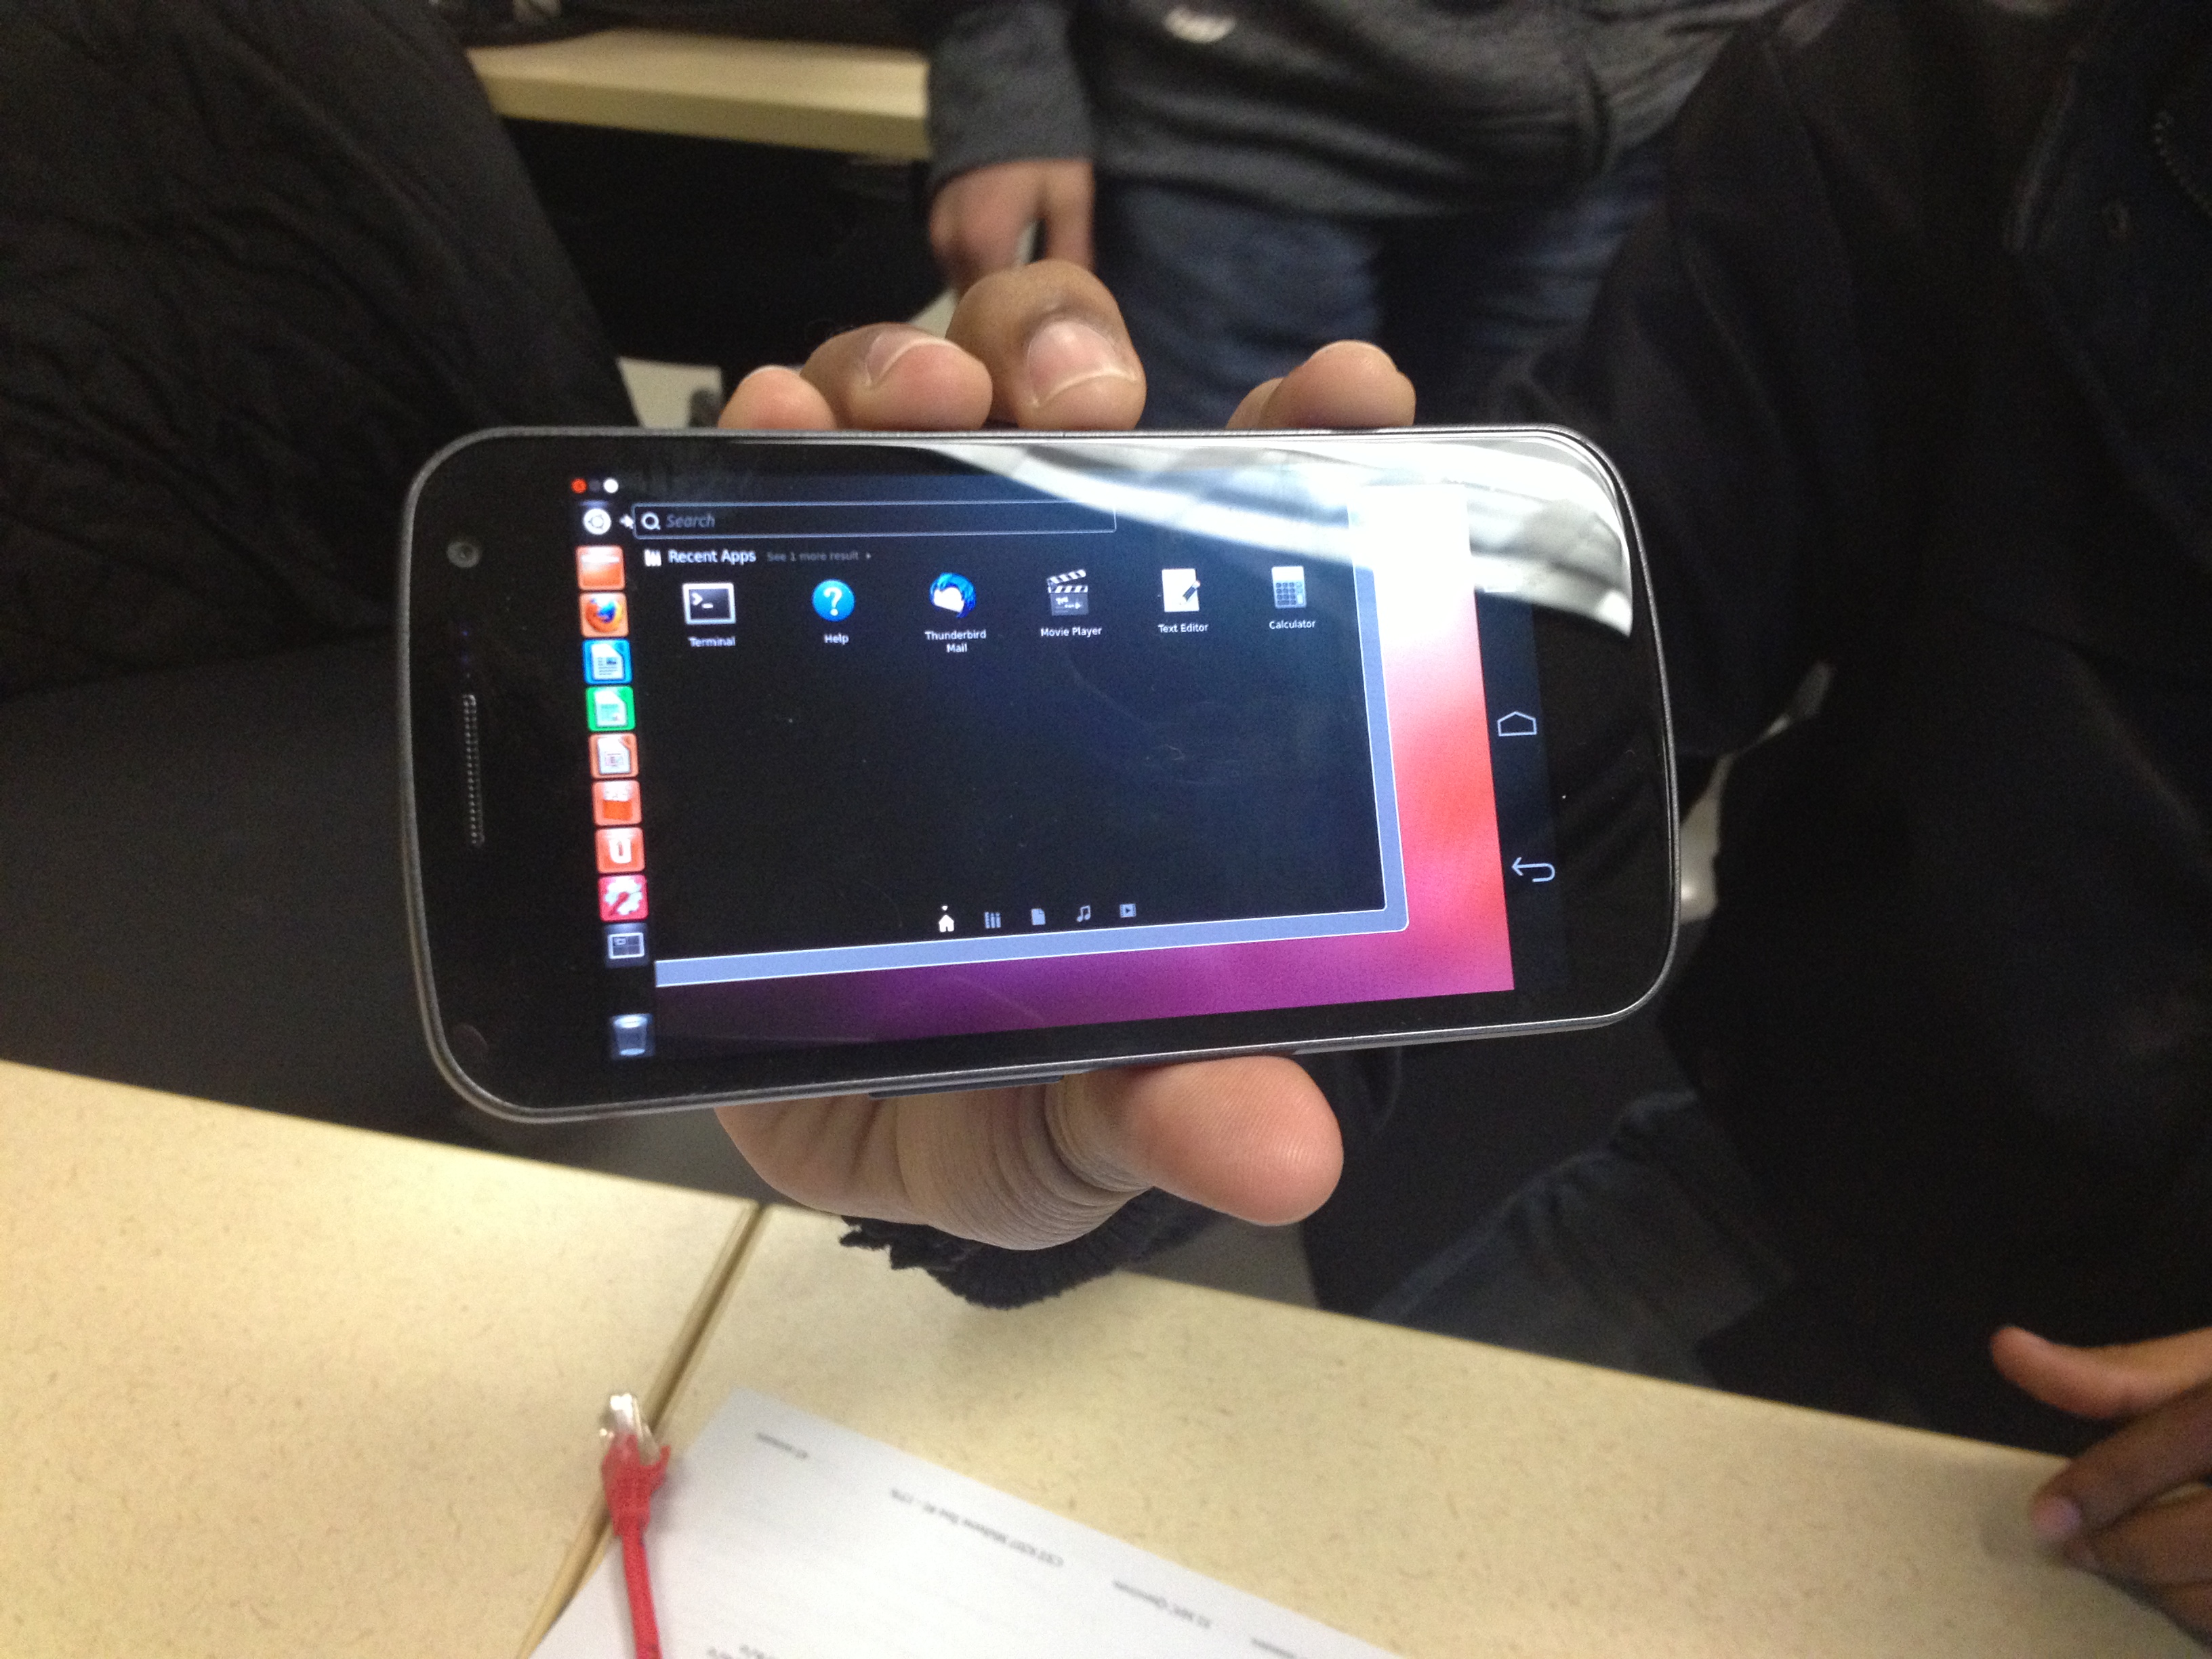 Ubuntu Desktop on Phone